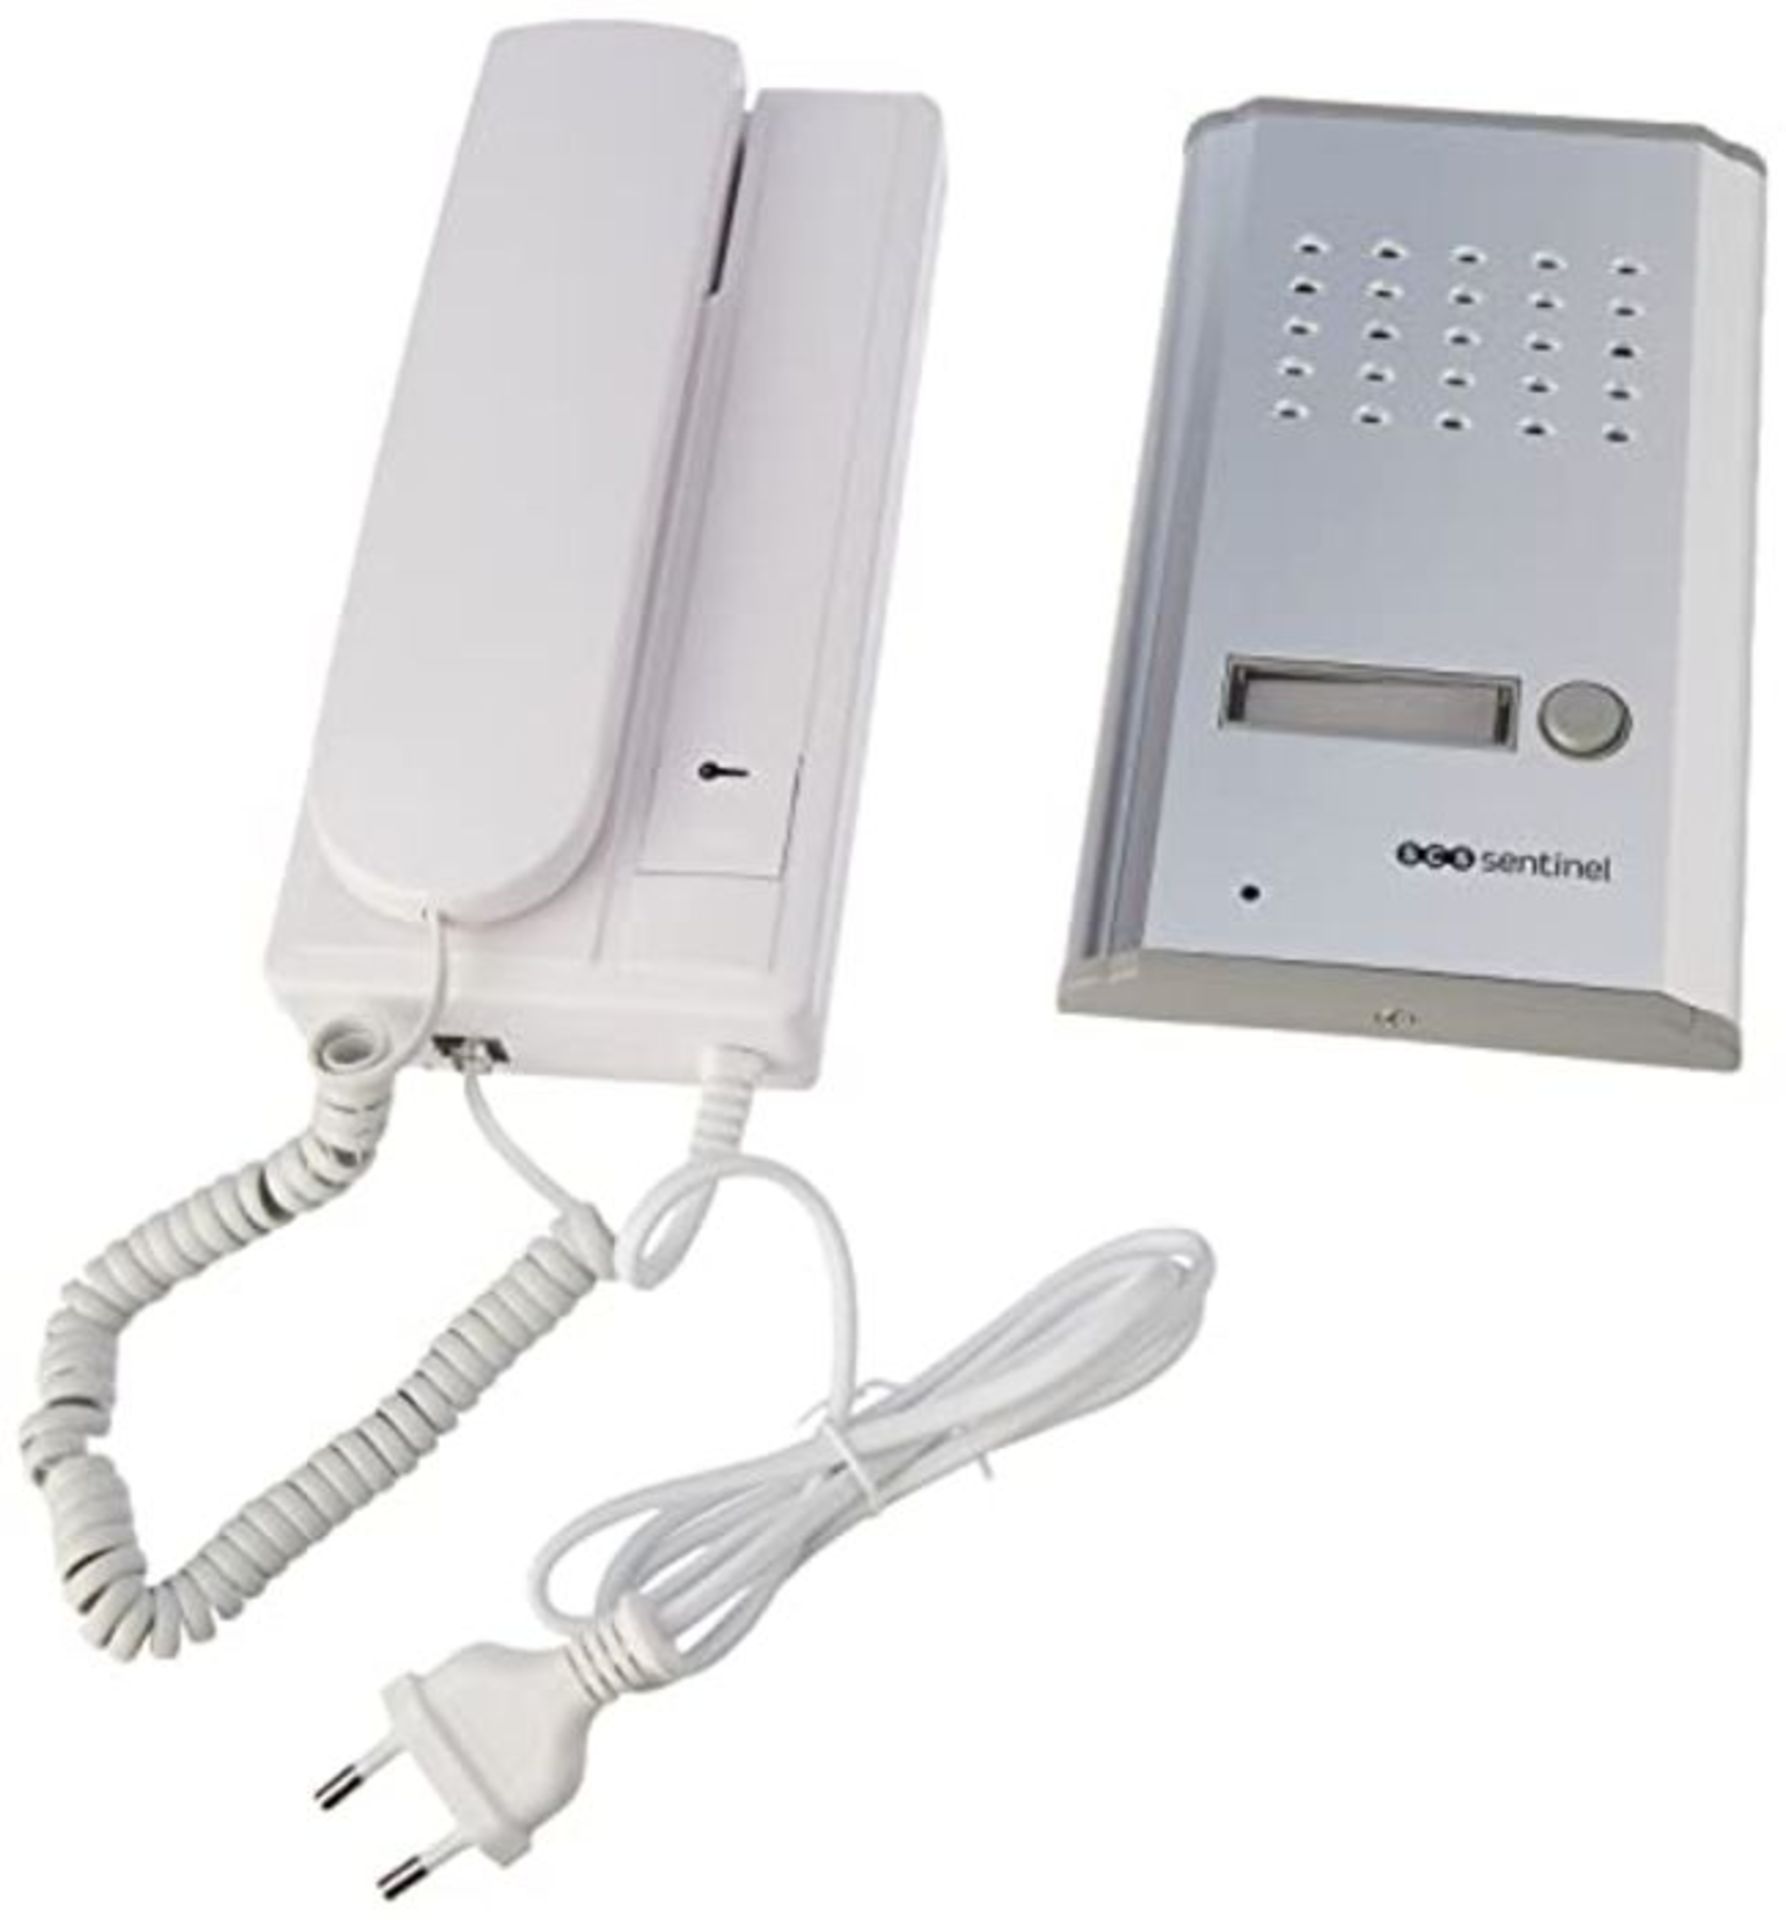 SCS SEN4137091 Metallic Door Phone Kit Mounted in Brackets 2 Wires Included